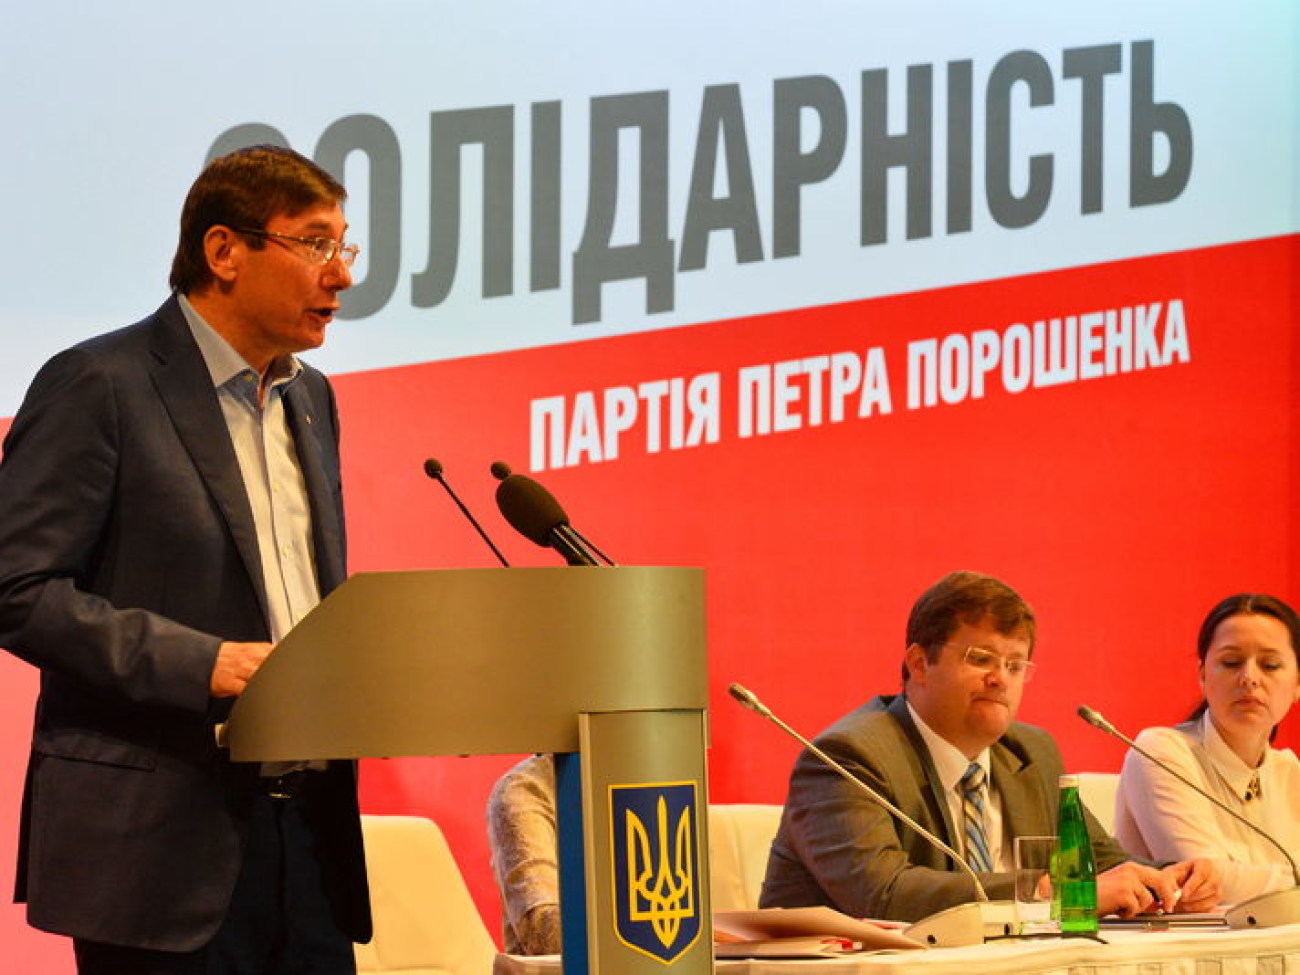 Луценко, Порошенко и &#171;Солидарность&#187;: Президент представил свою избирательную команду